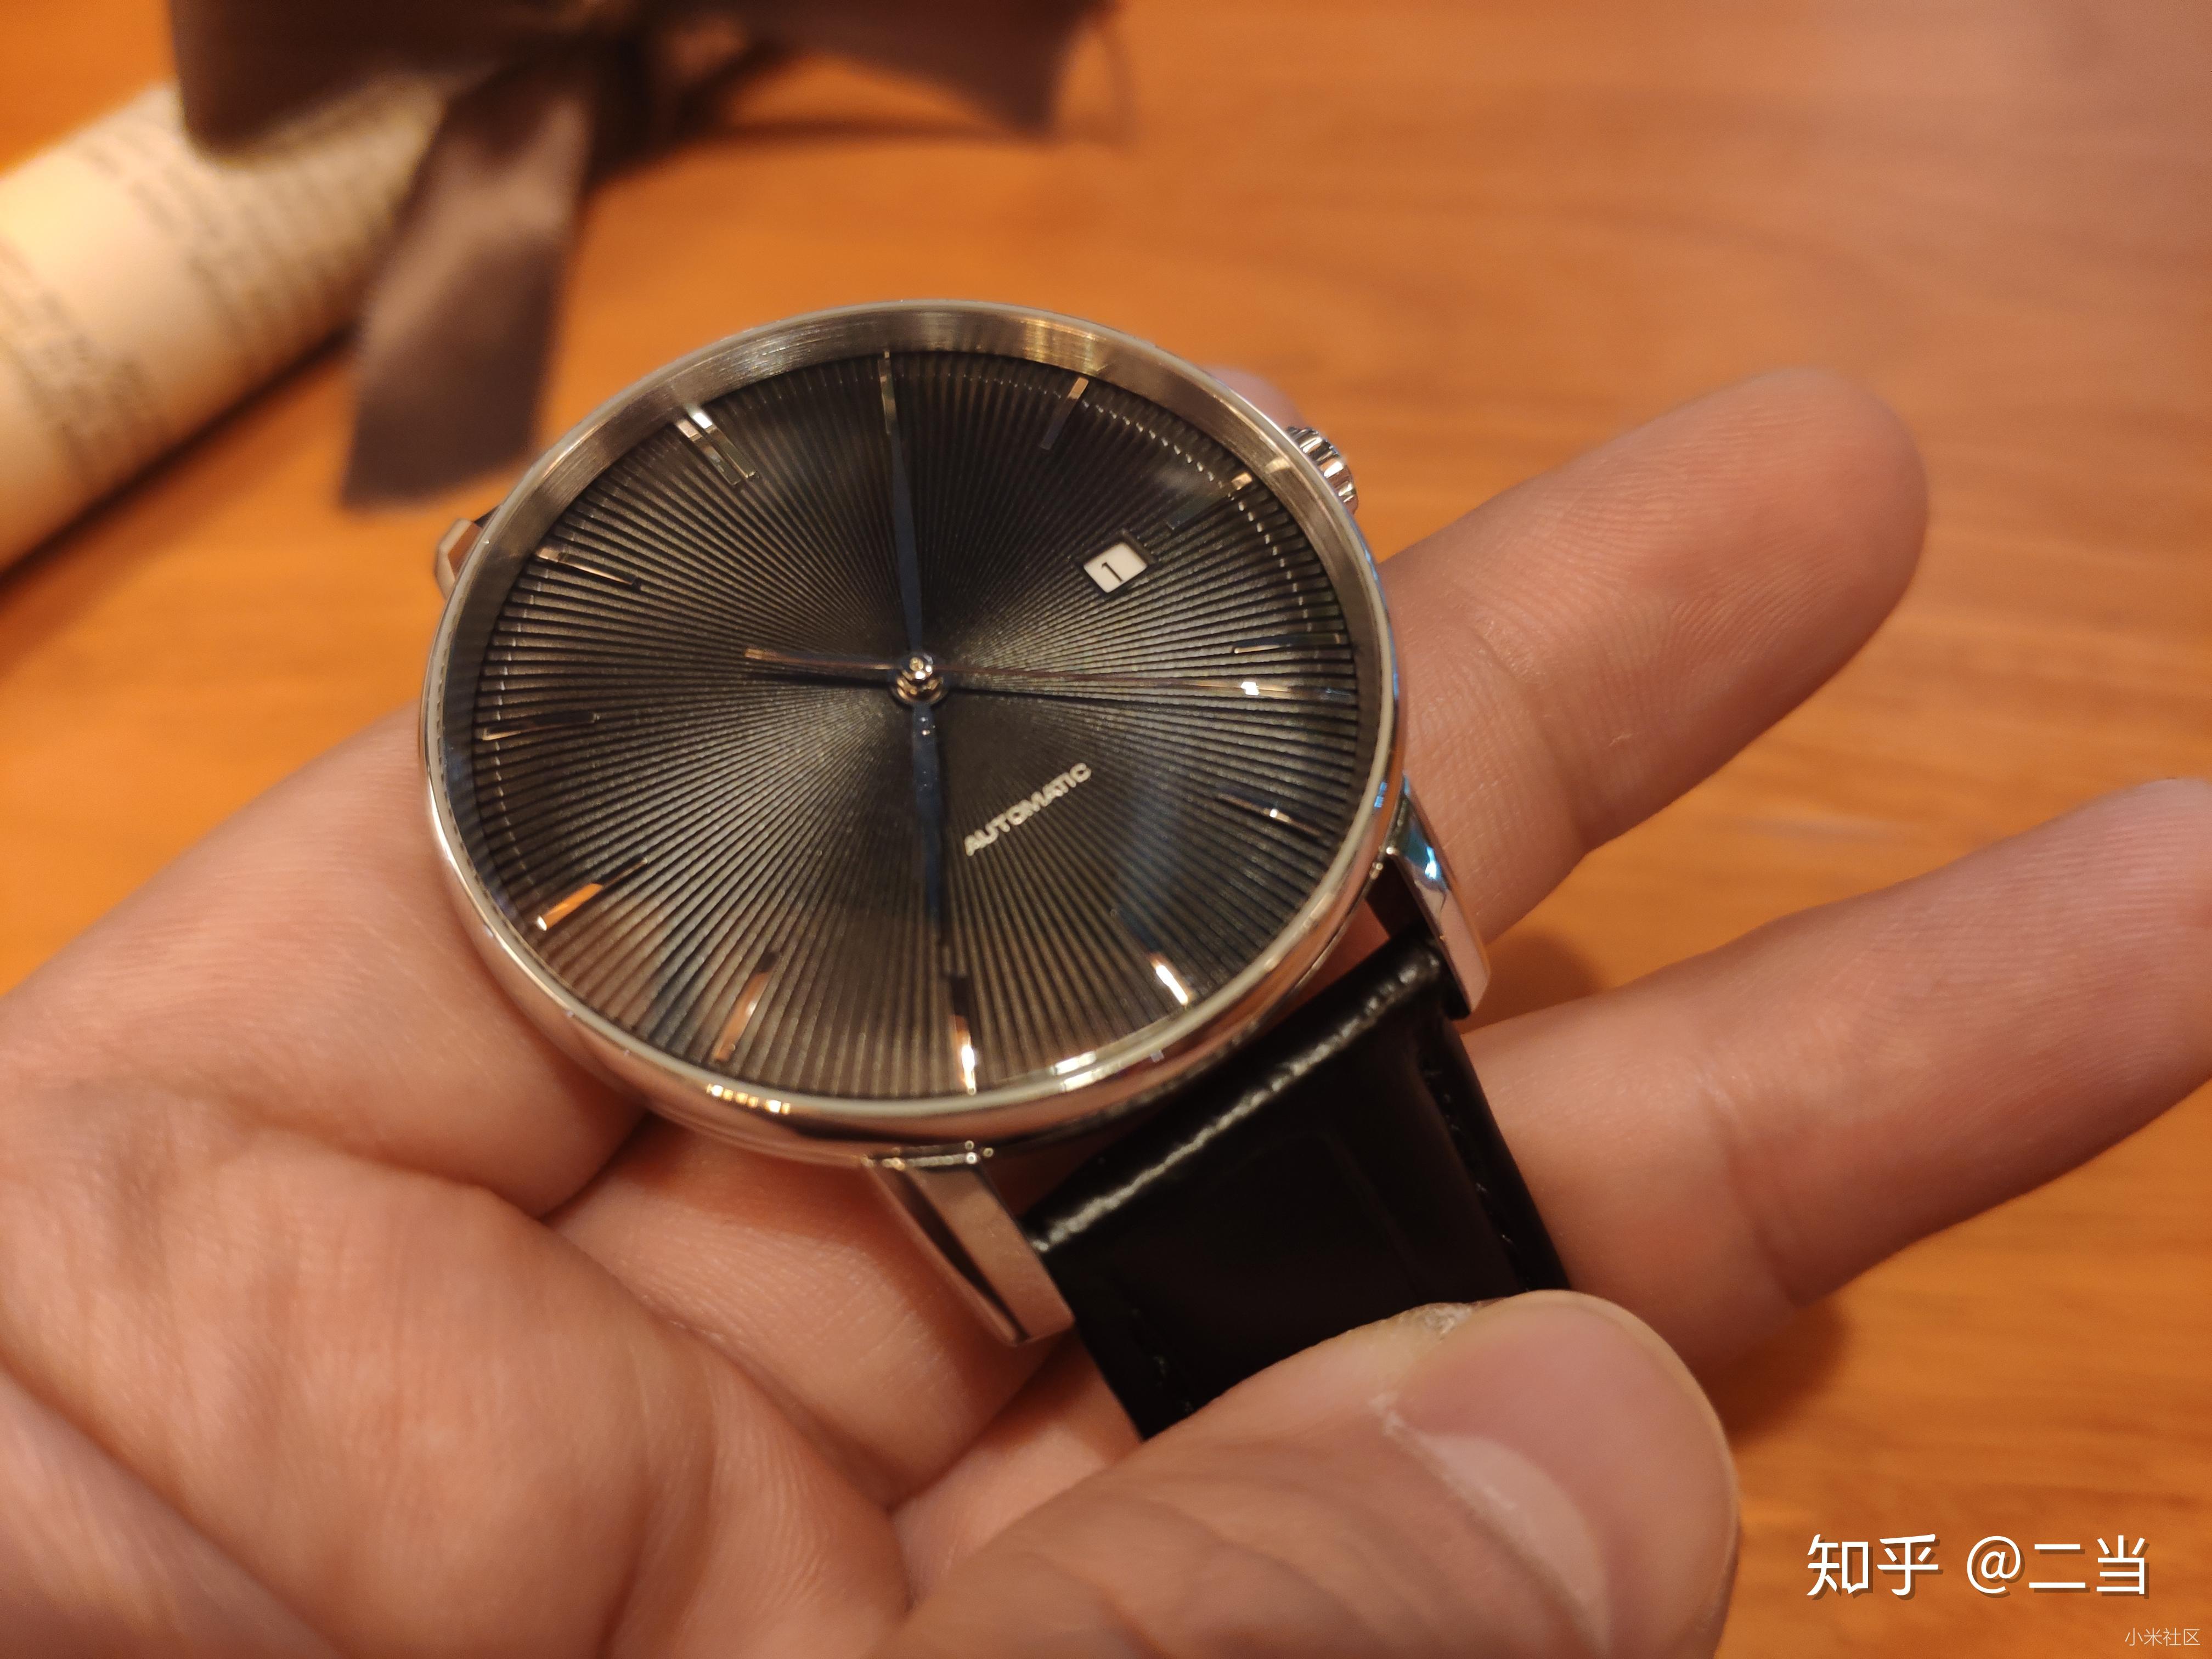 小米有品全自动进口机芯手表,仅需499元